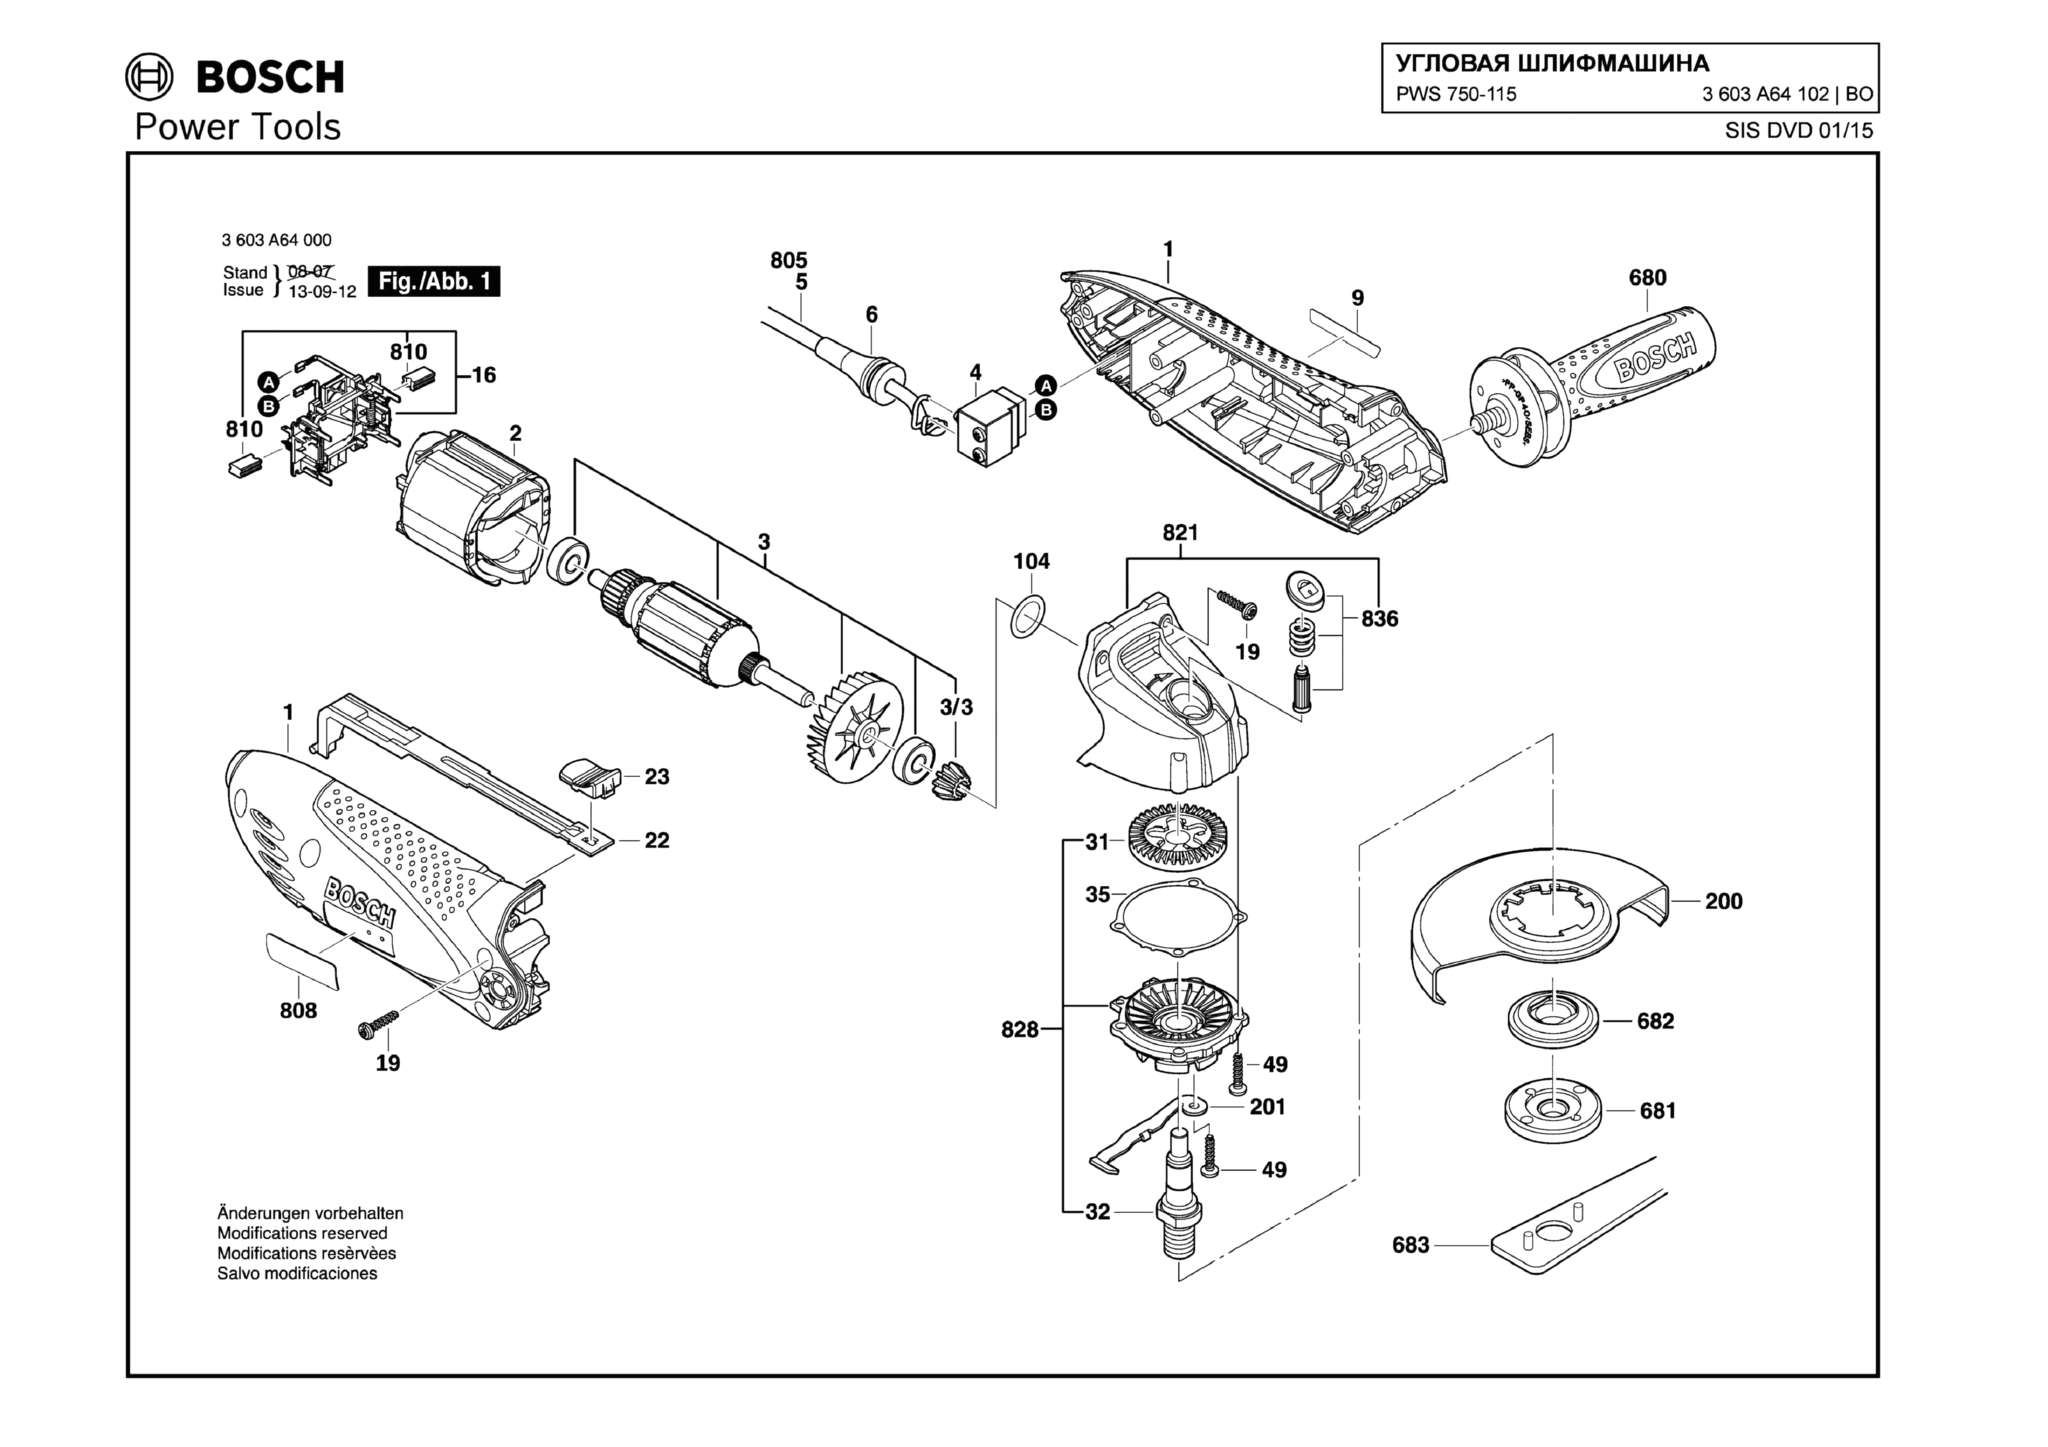 Запчасти, схема и деталировка Bosch PWS 750-115 (ТИП 3603A64102)